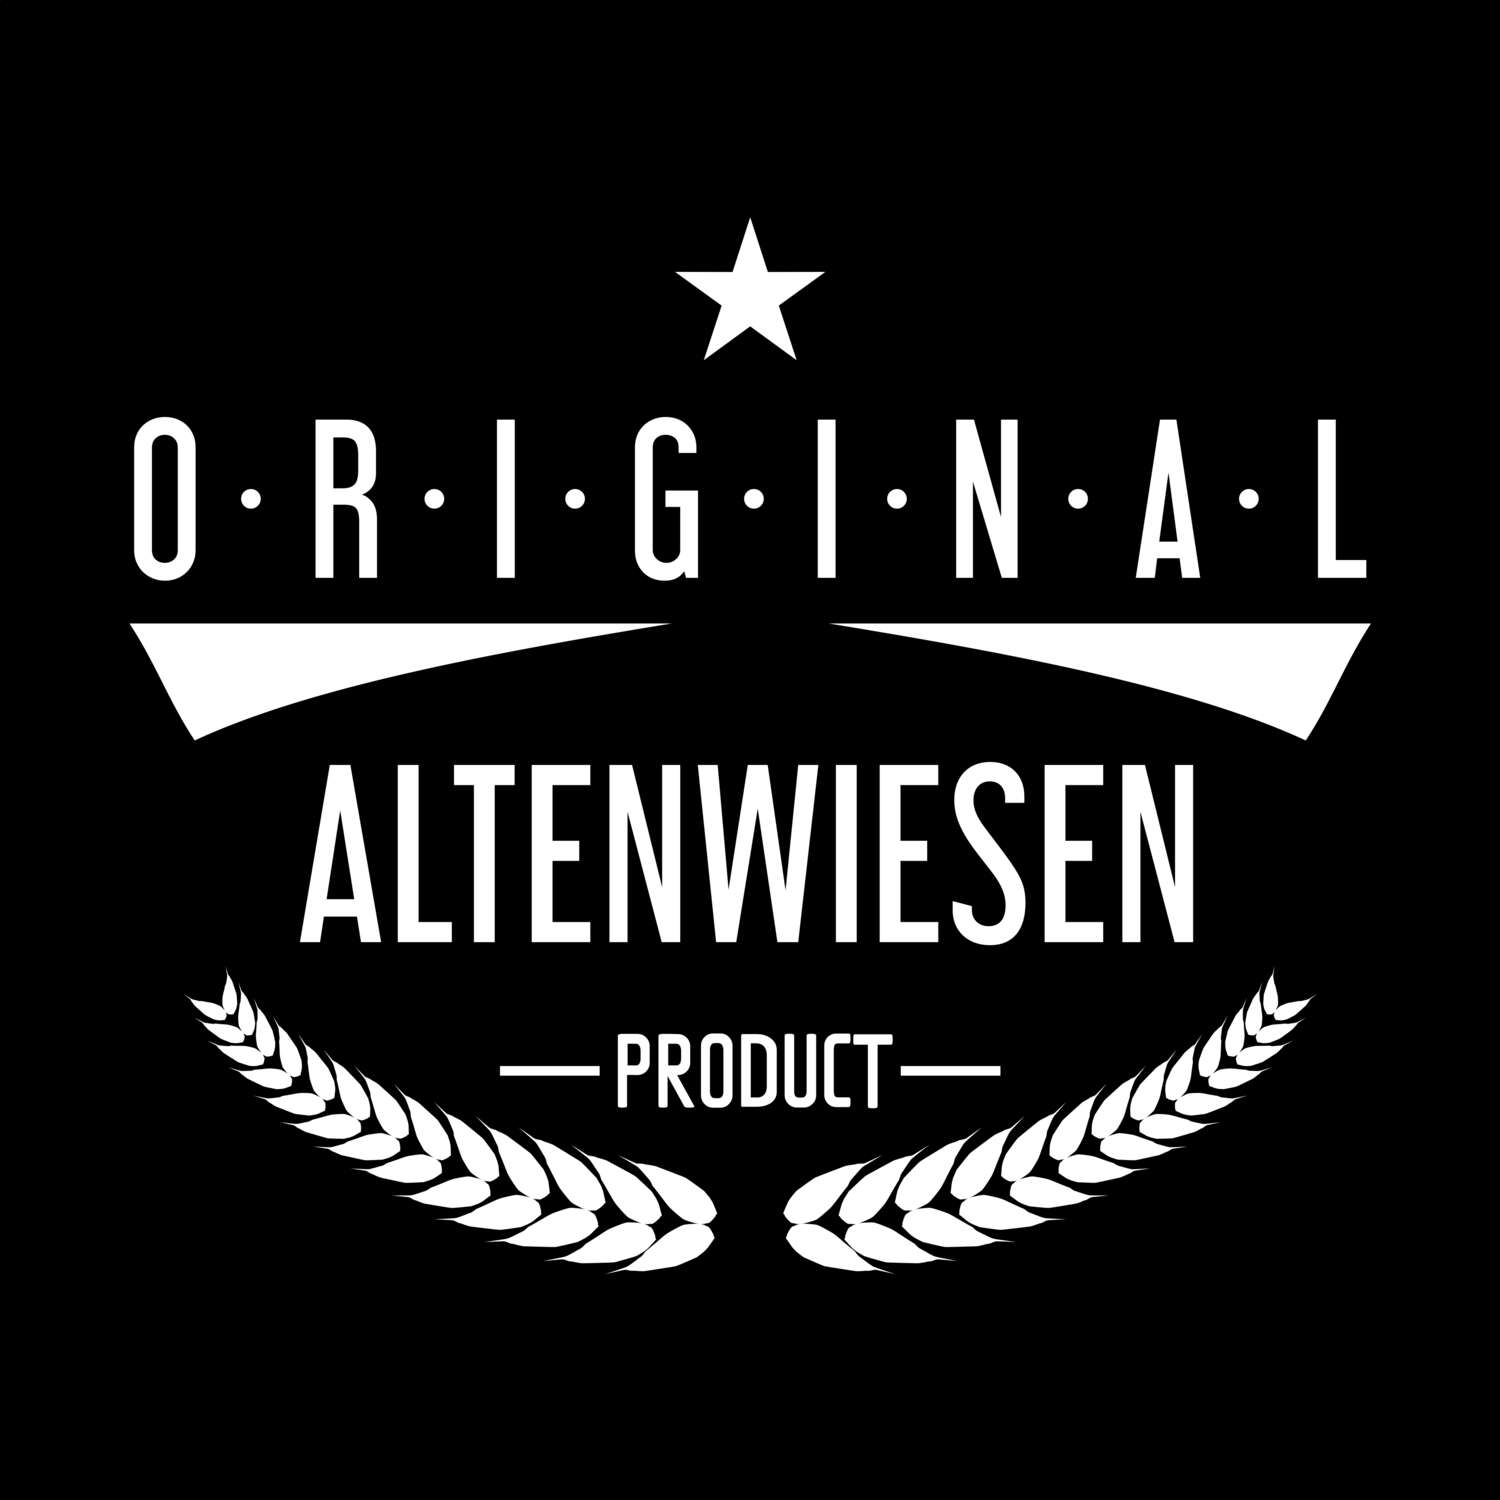 Altenwiesen T-Shirt »Original Product«